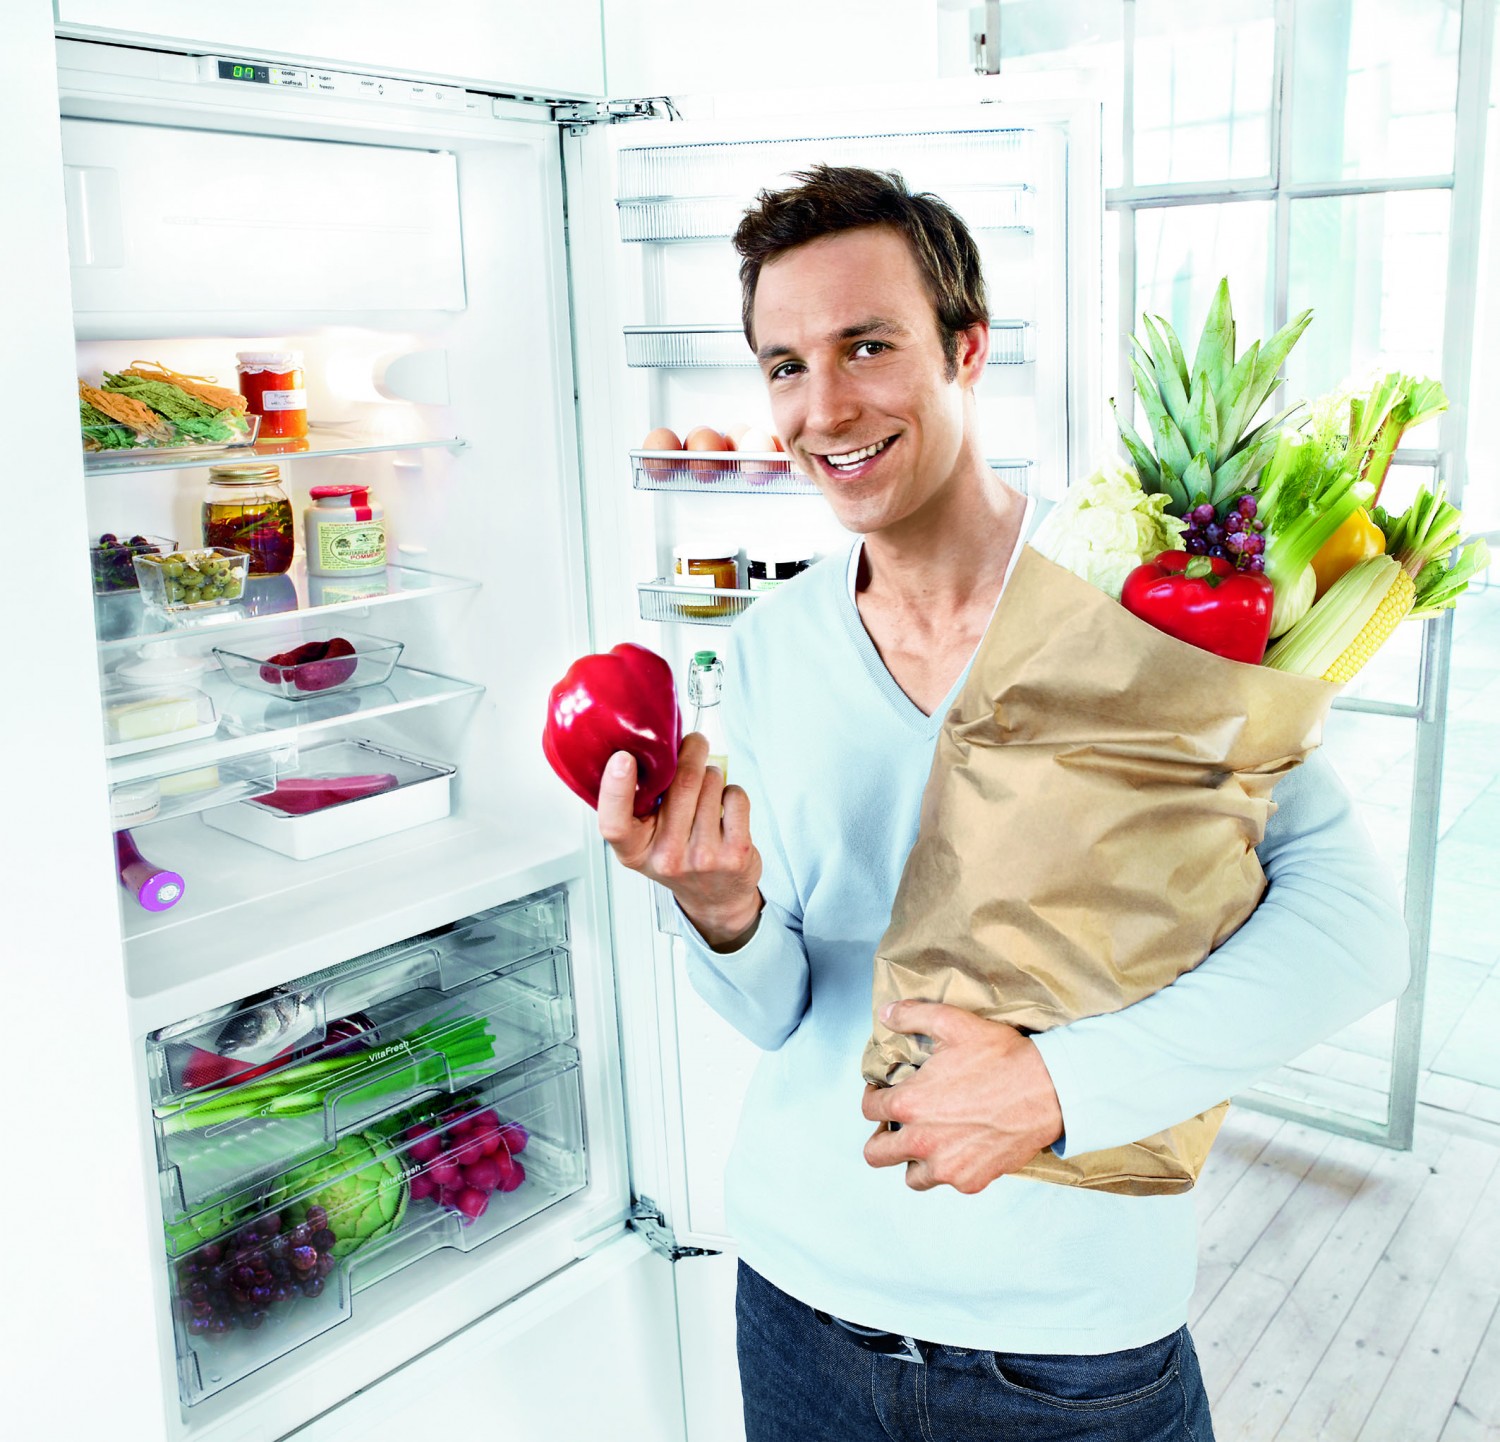 Ratgeber Checkliste: Worauf Sie beim Kauf von Gefrier- und Kühlgeräten achten sollten - News, Bild 1